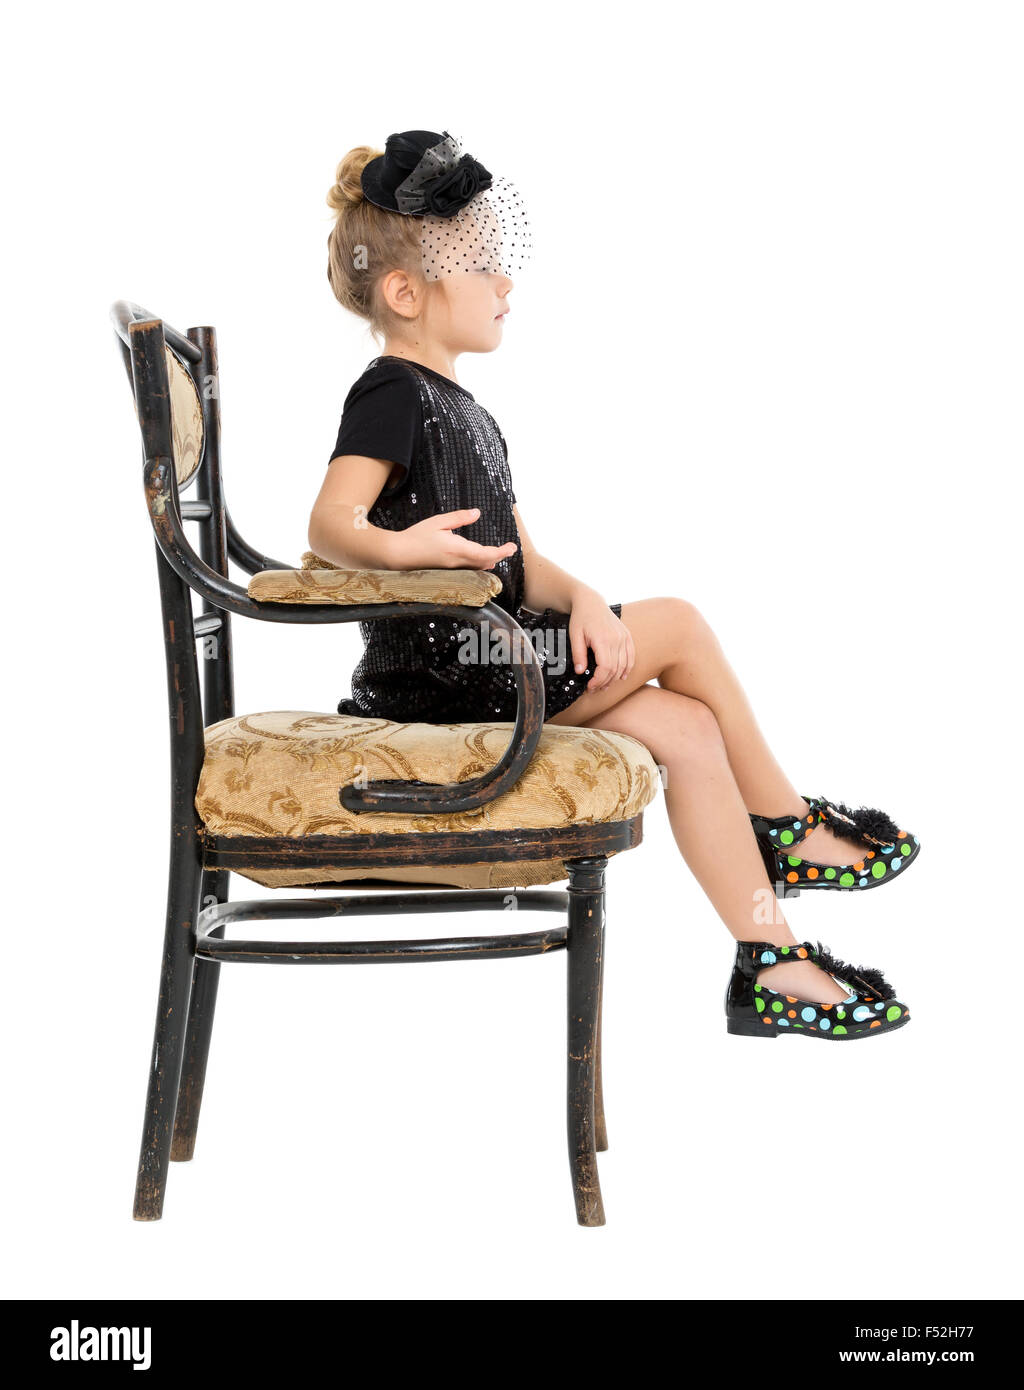 Petite fille assise dans la chaise ancienne, sur fond blanc Banque D'Images